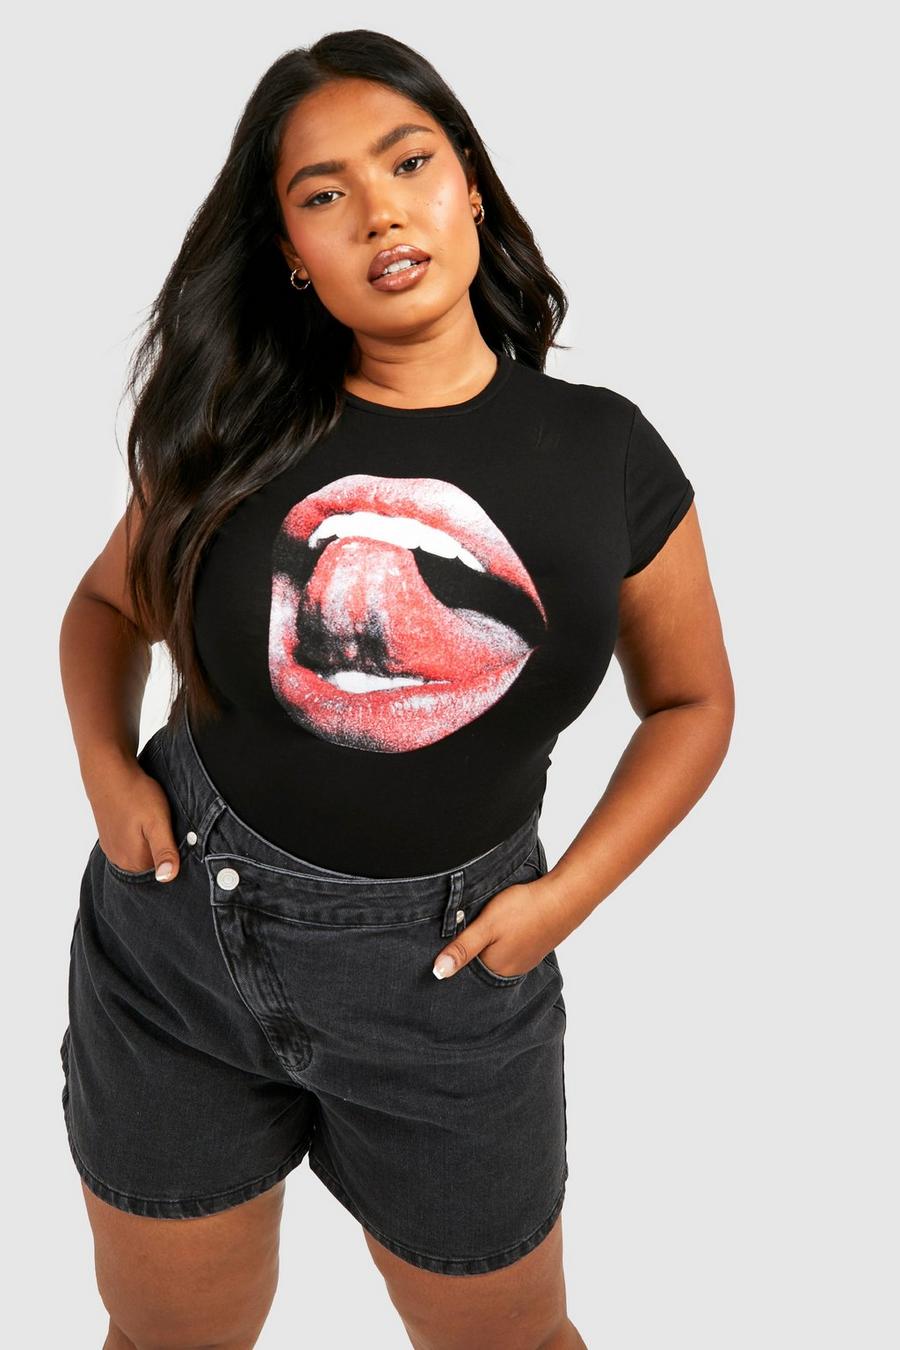 Black Plus Getailleerd T-Shirt Met Kapmouwen En Lippen